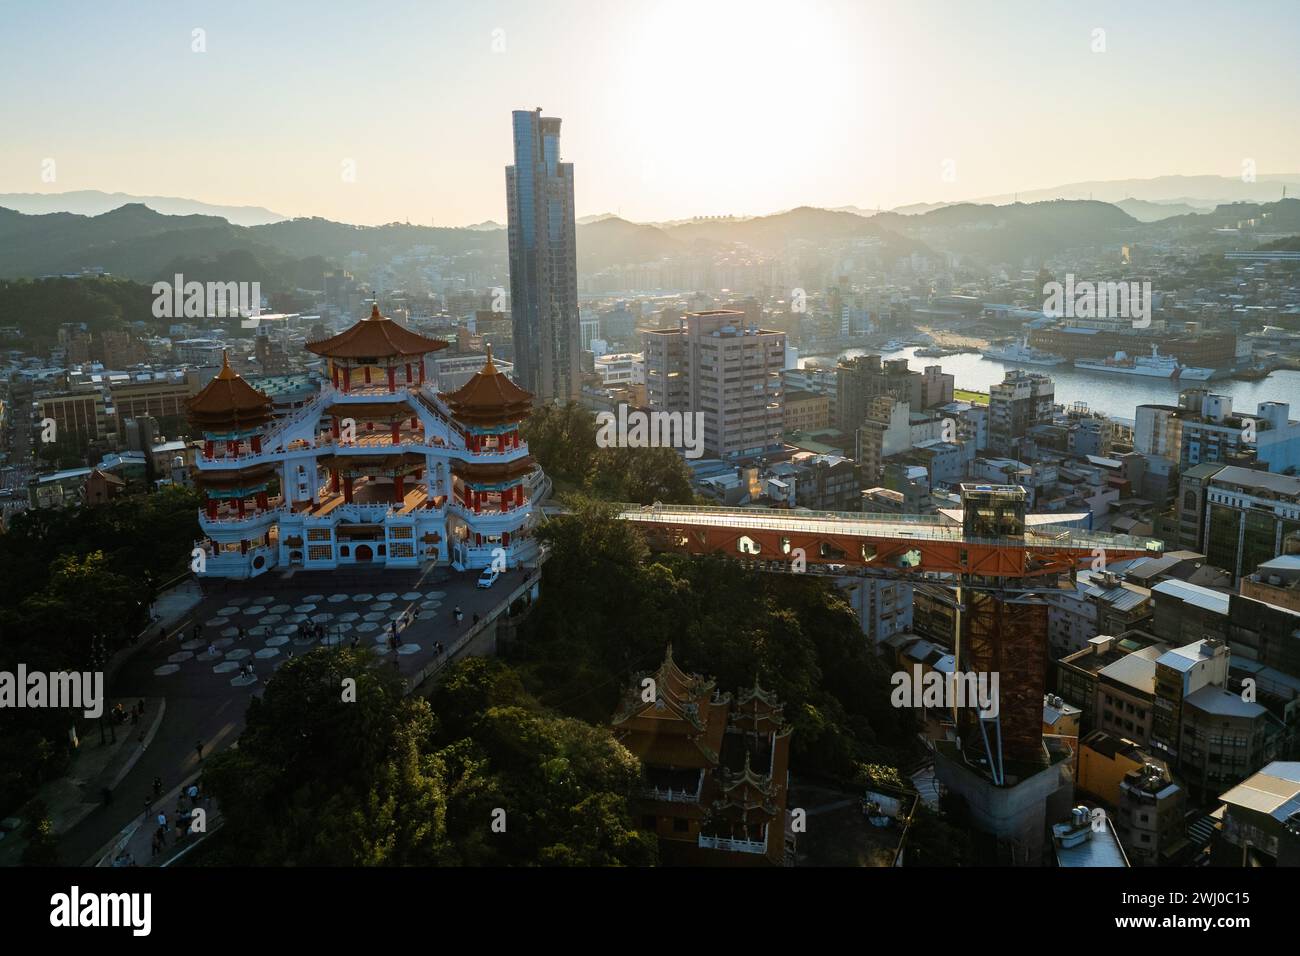 Vue aérienne de l'autel Zhupu et de la tour keelung dans le nord de Taiwan au crépuscule Banque D'Images